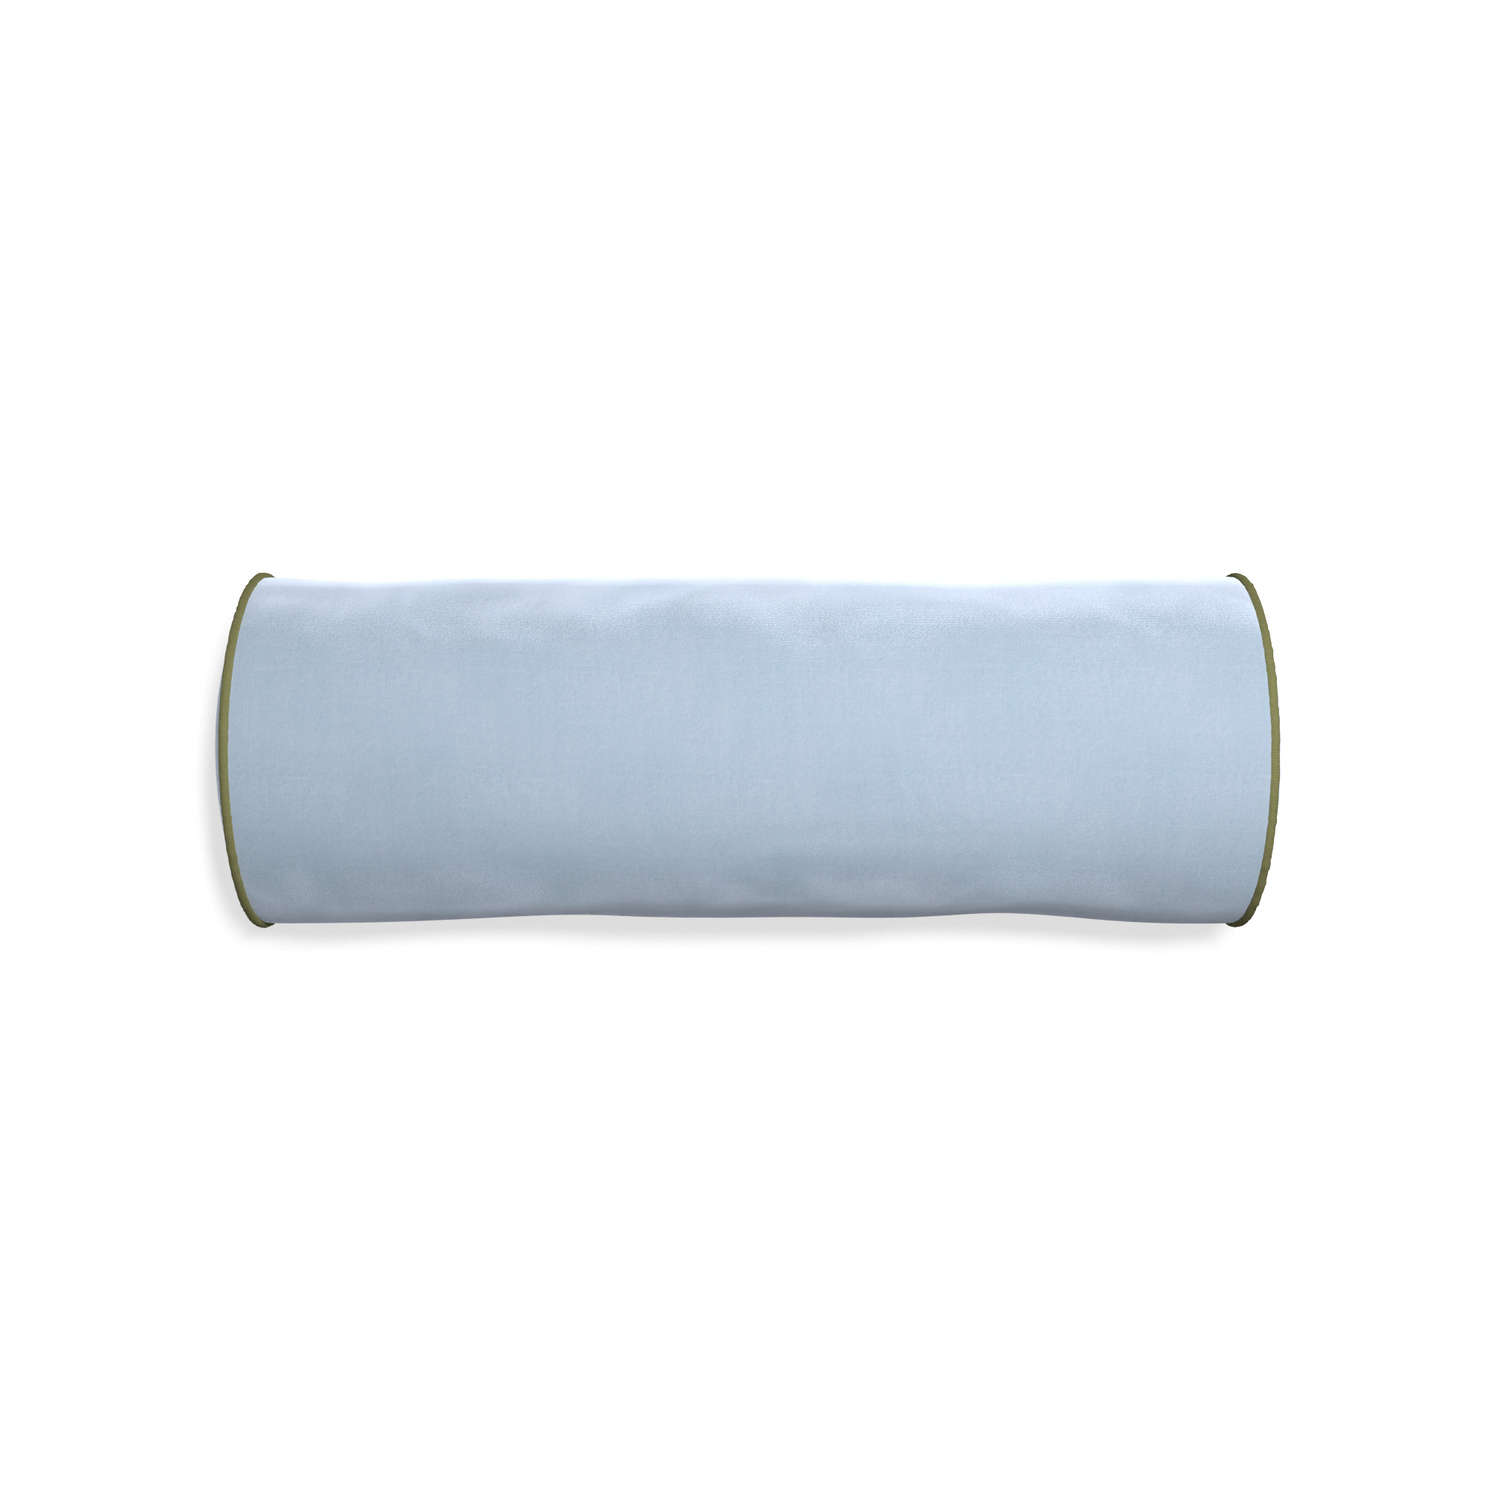 bolster light blue velvet pillow with moss green piping